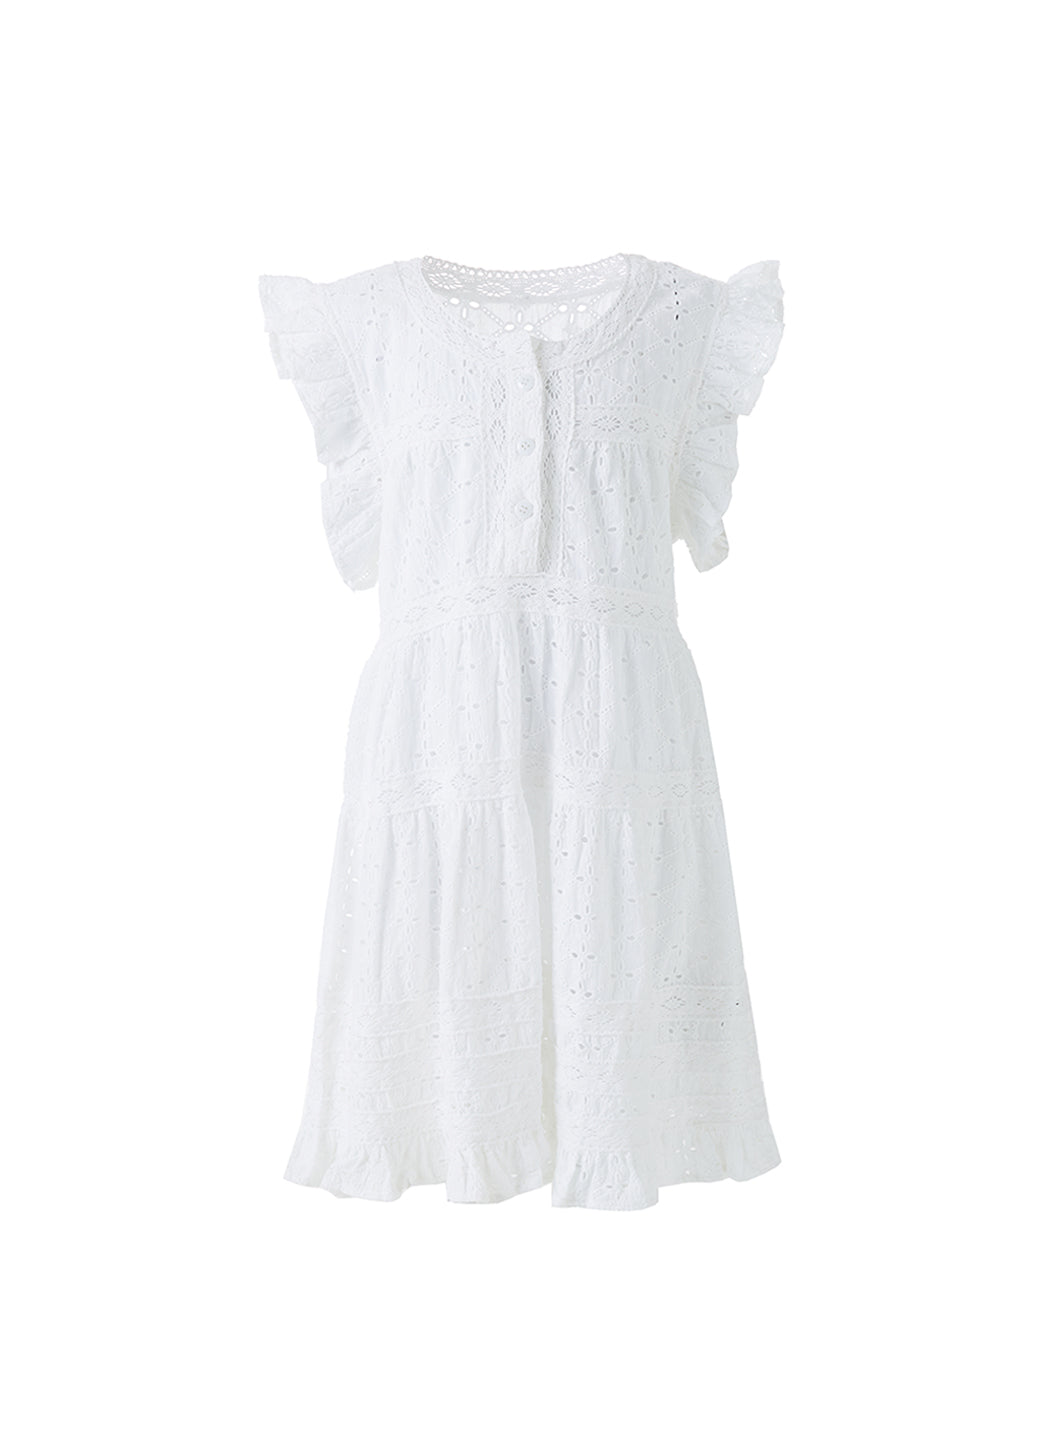 Baby Rebekah White Dress